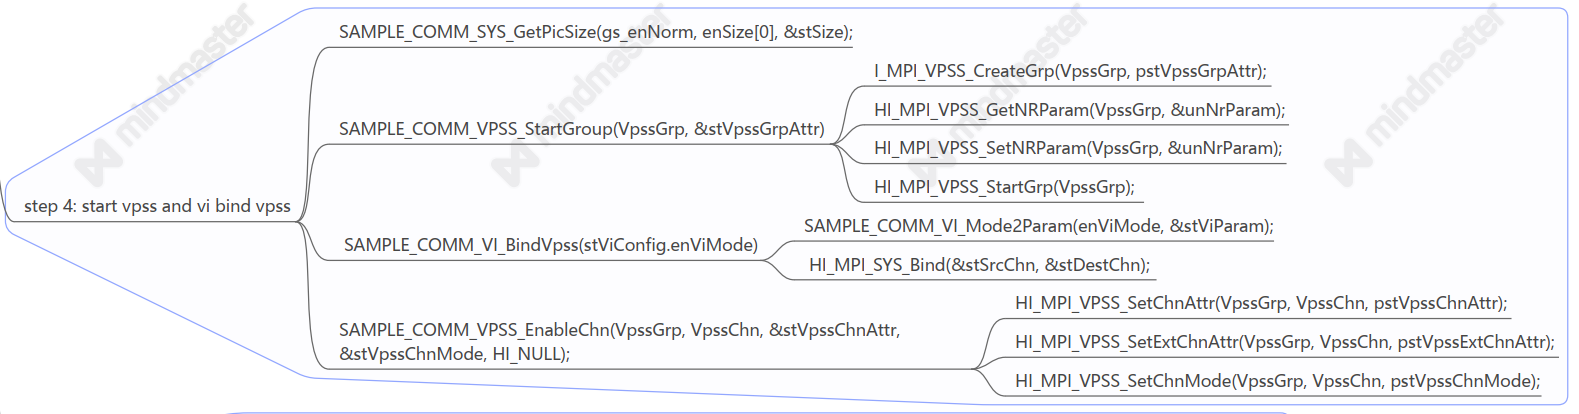 海思3518E开发笔记2.6——海思VPSS（Video Process Sub-System）模块详解